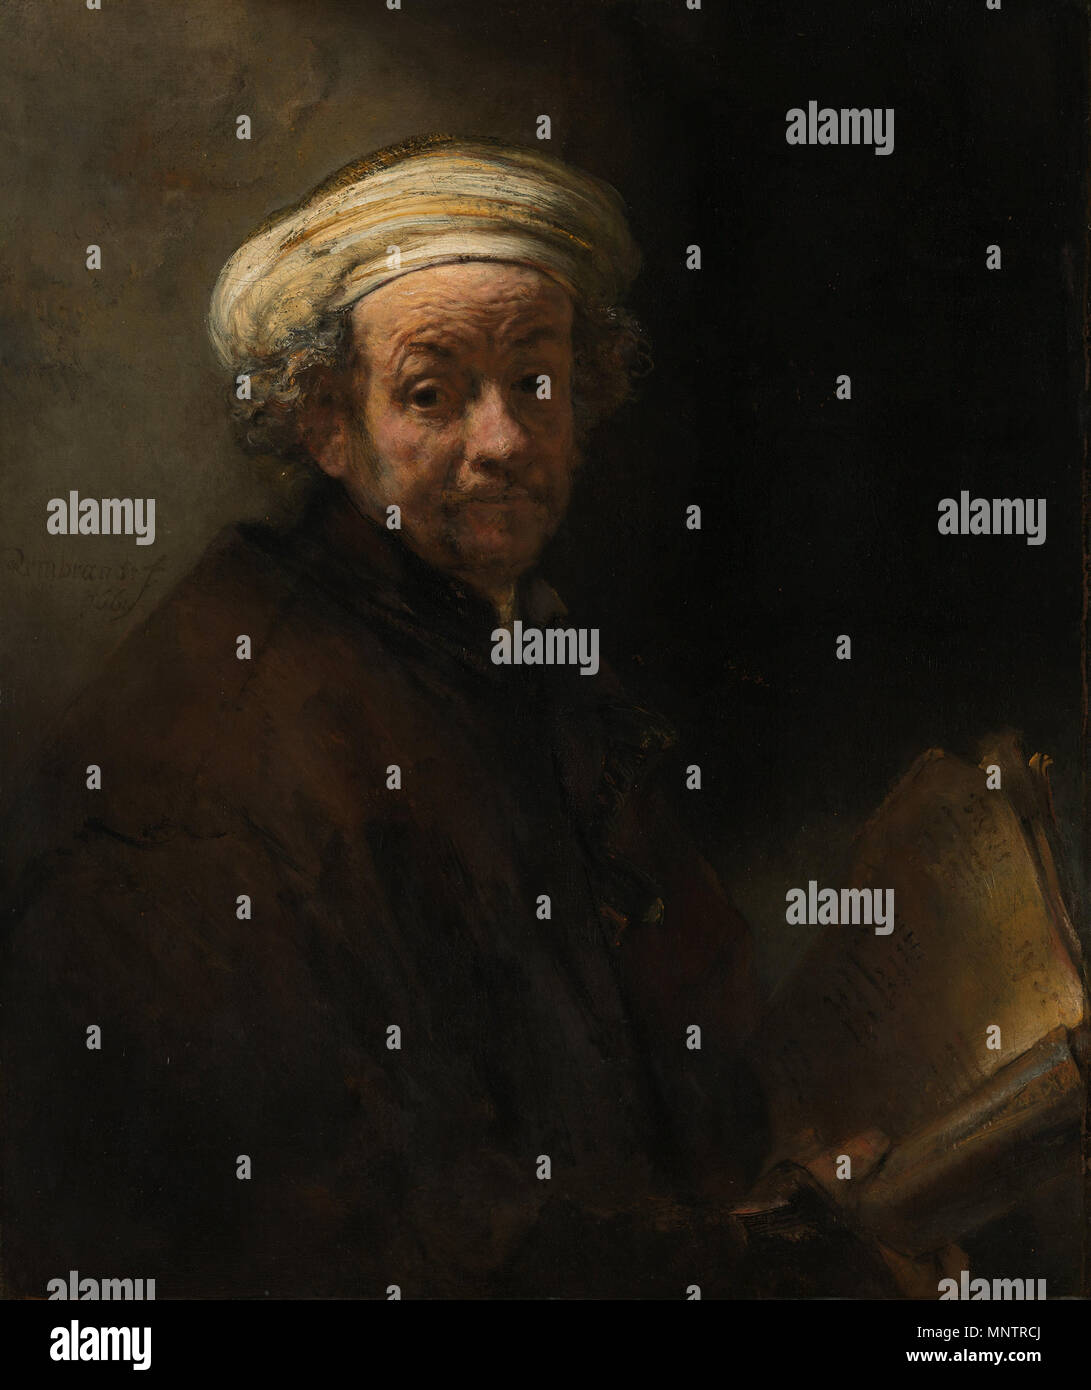 Self-portrait as the apostle Paul   1661.   1051 Rembrandt Harmensz. van Rijn - Zelfportret als de apostel Paulus - Google Art Project Stock Photo